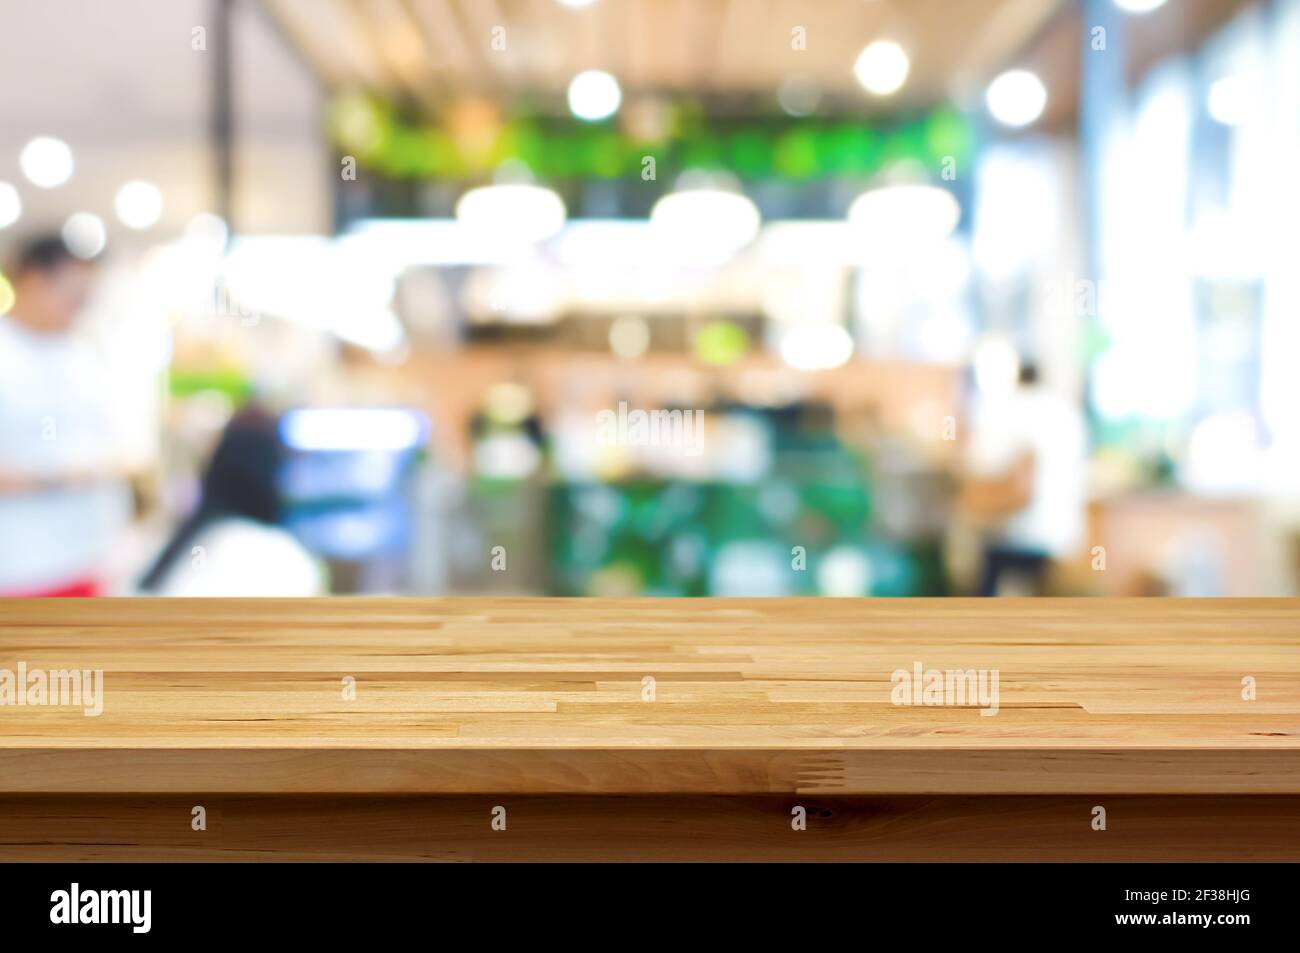 Holztischplatte auf Blur Cafe (Restaurant) Innenraum Hintergrund - Kann zur Anzeige oder Montage Ihrer Produkte verwendet werden Stockfoto